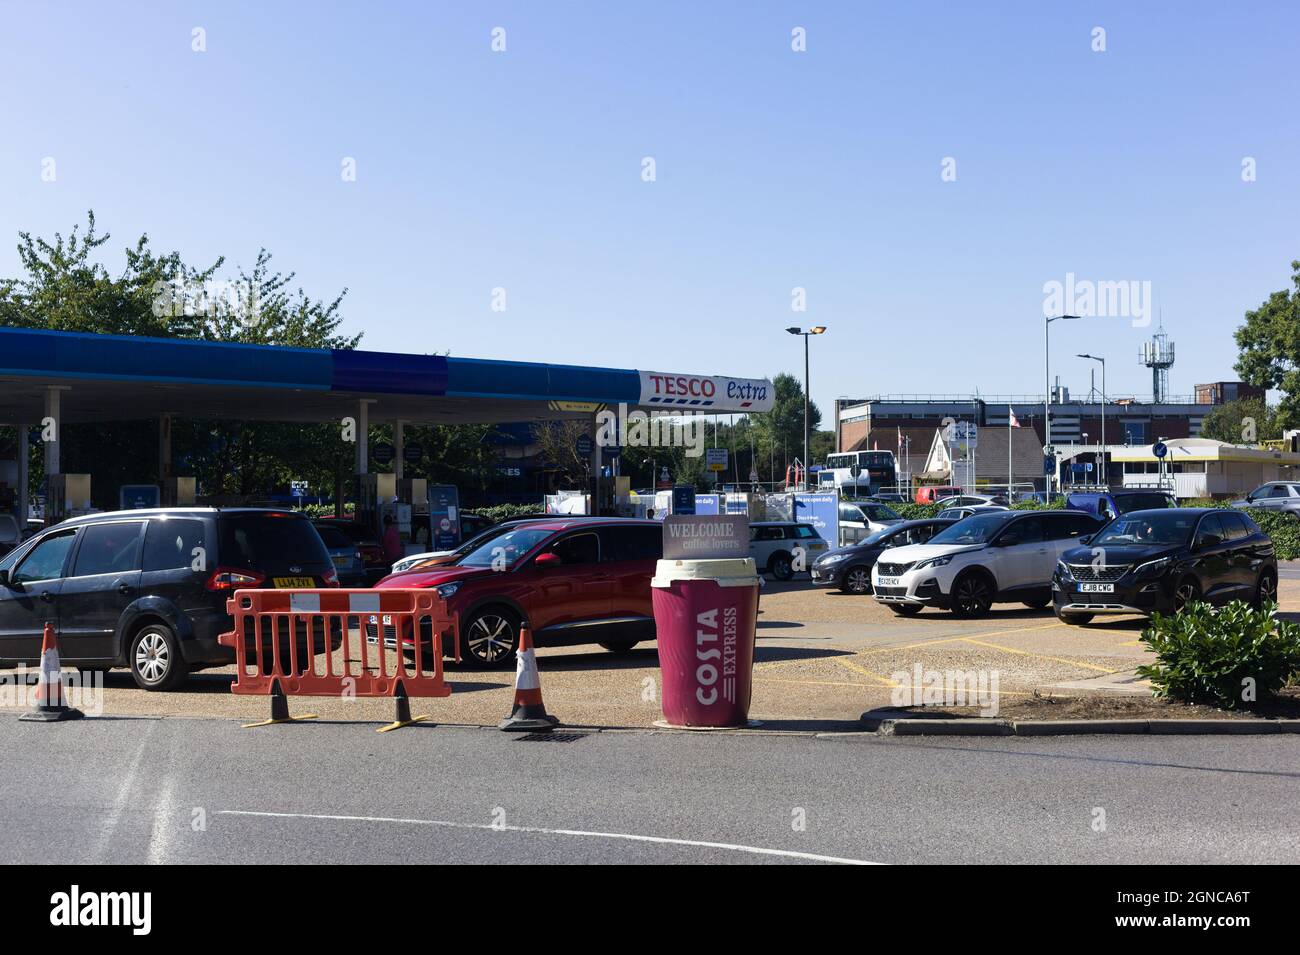 Gran Bretaña, Pitsea, Essex. 24th de septiembre de 2021 . Los informes de escasez de combustible en todo el Reino Unido han provocado una serie de compras de pánico y caos en el tráfico. Foto de stock